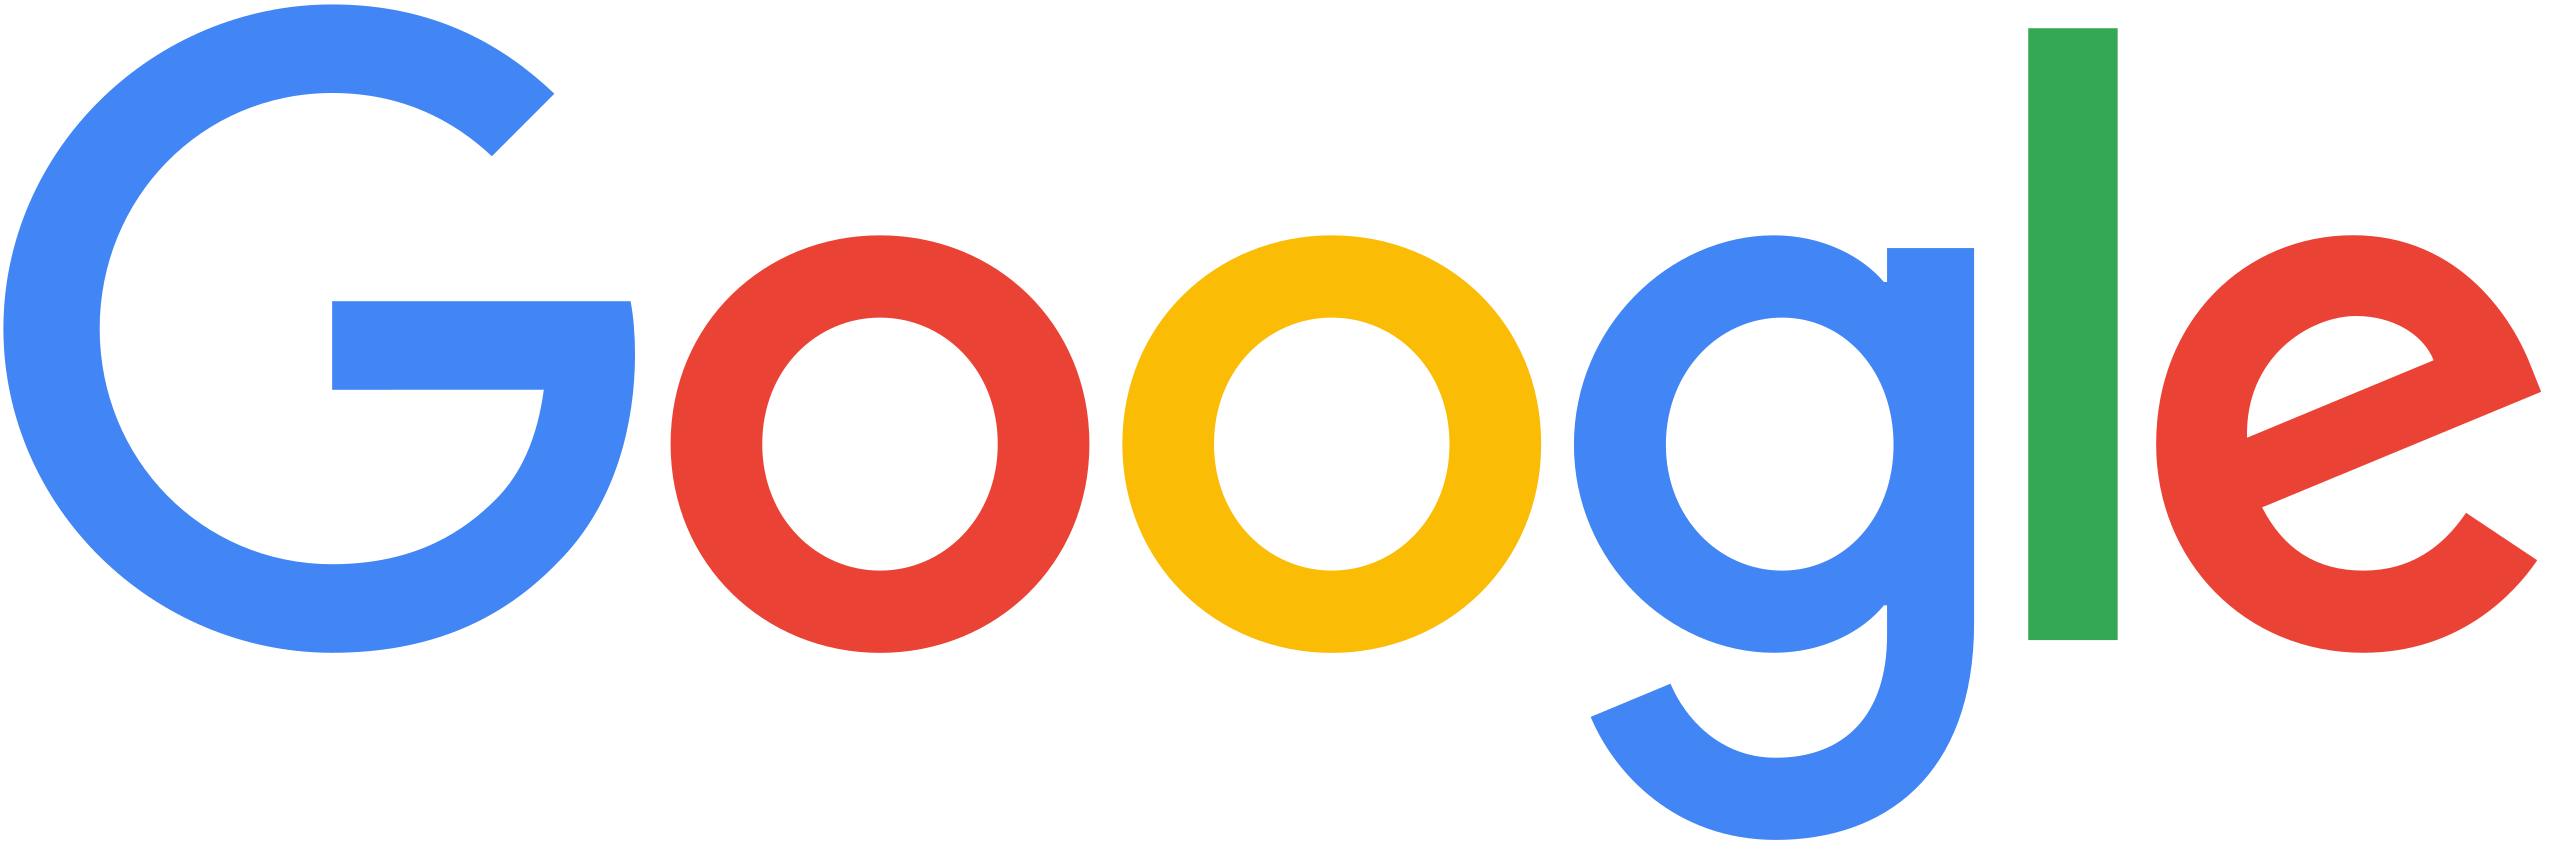 Google 2015 logo.png